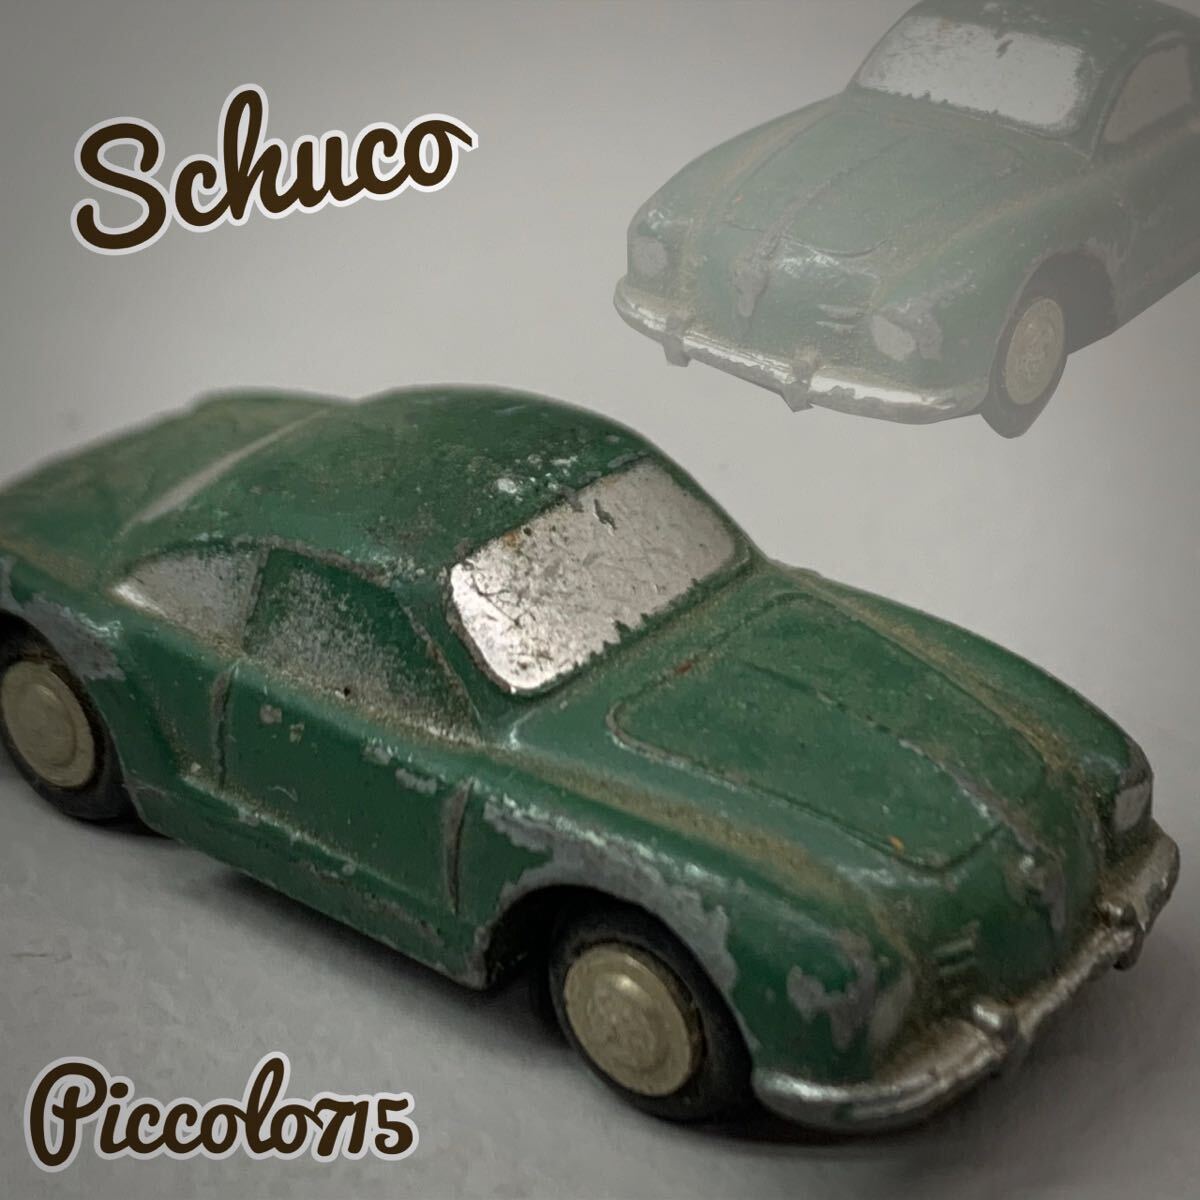 Y■当時物■⑯ Schuco シュコー Piccolo ピッコロ 715 ミニカー KARMANN-GHIA-VW カルマンギア 西ドイツ製 1/90 グリーン 緑 ビンテージの画像1